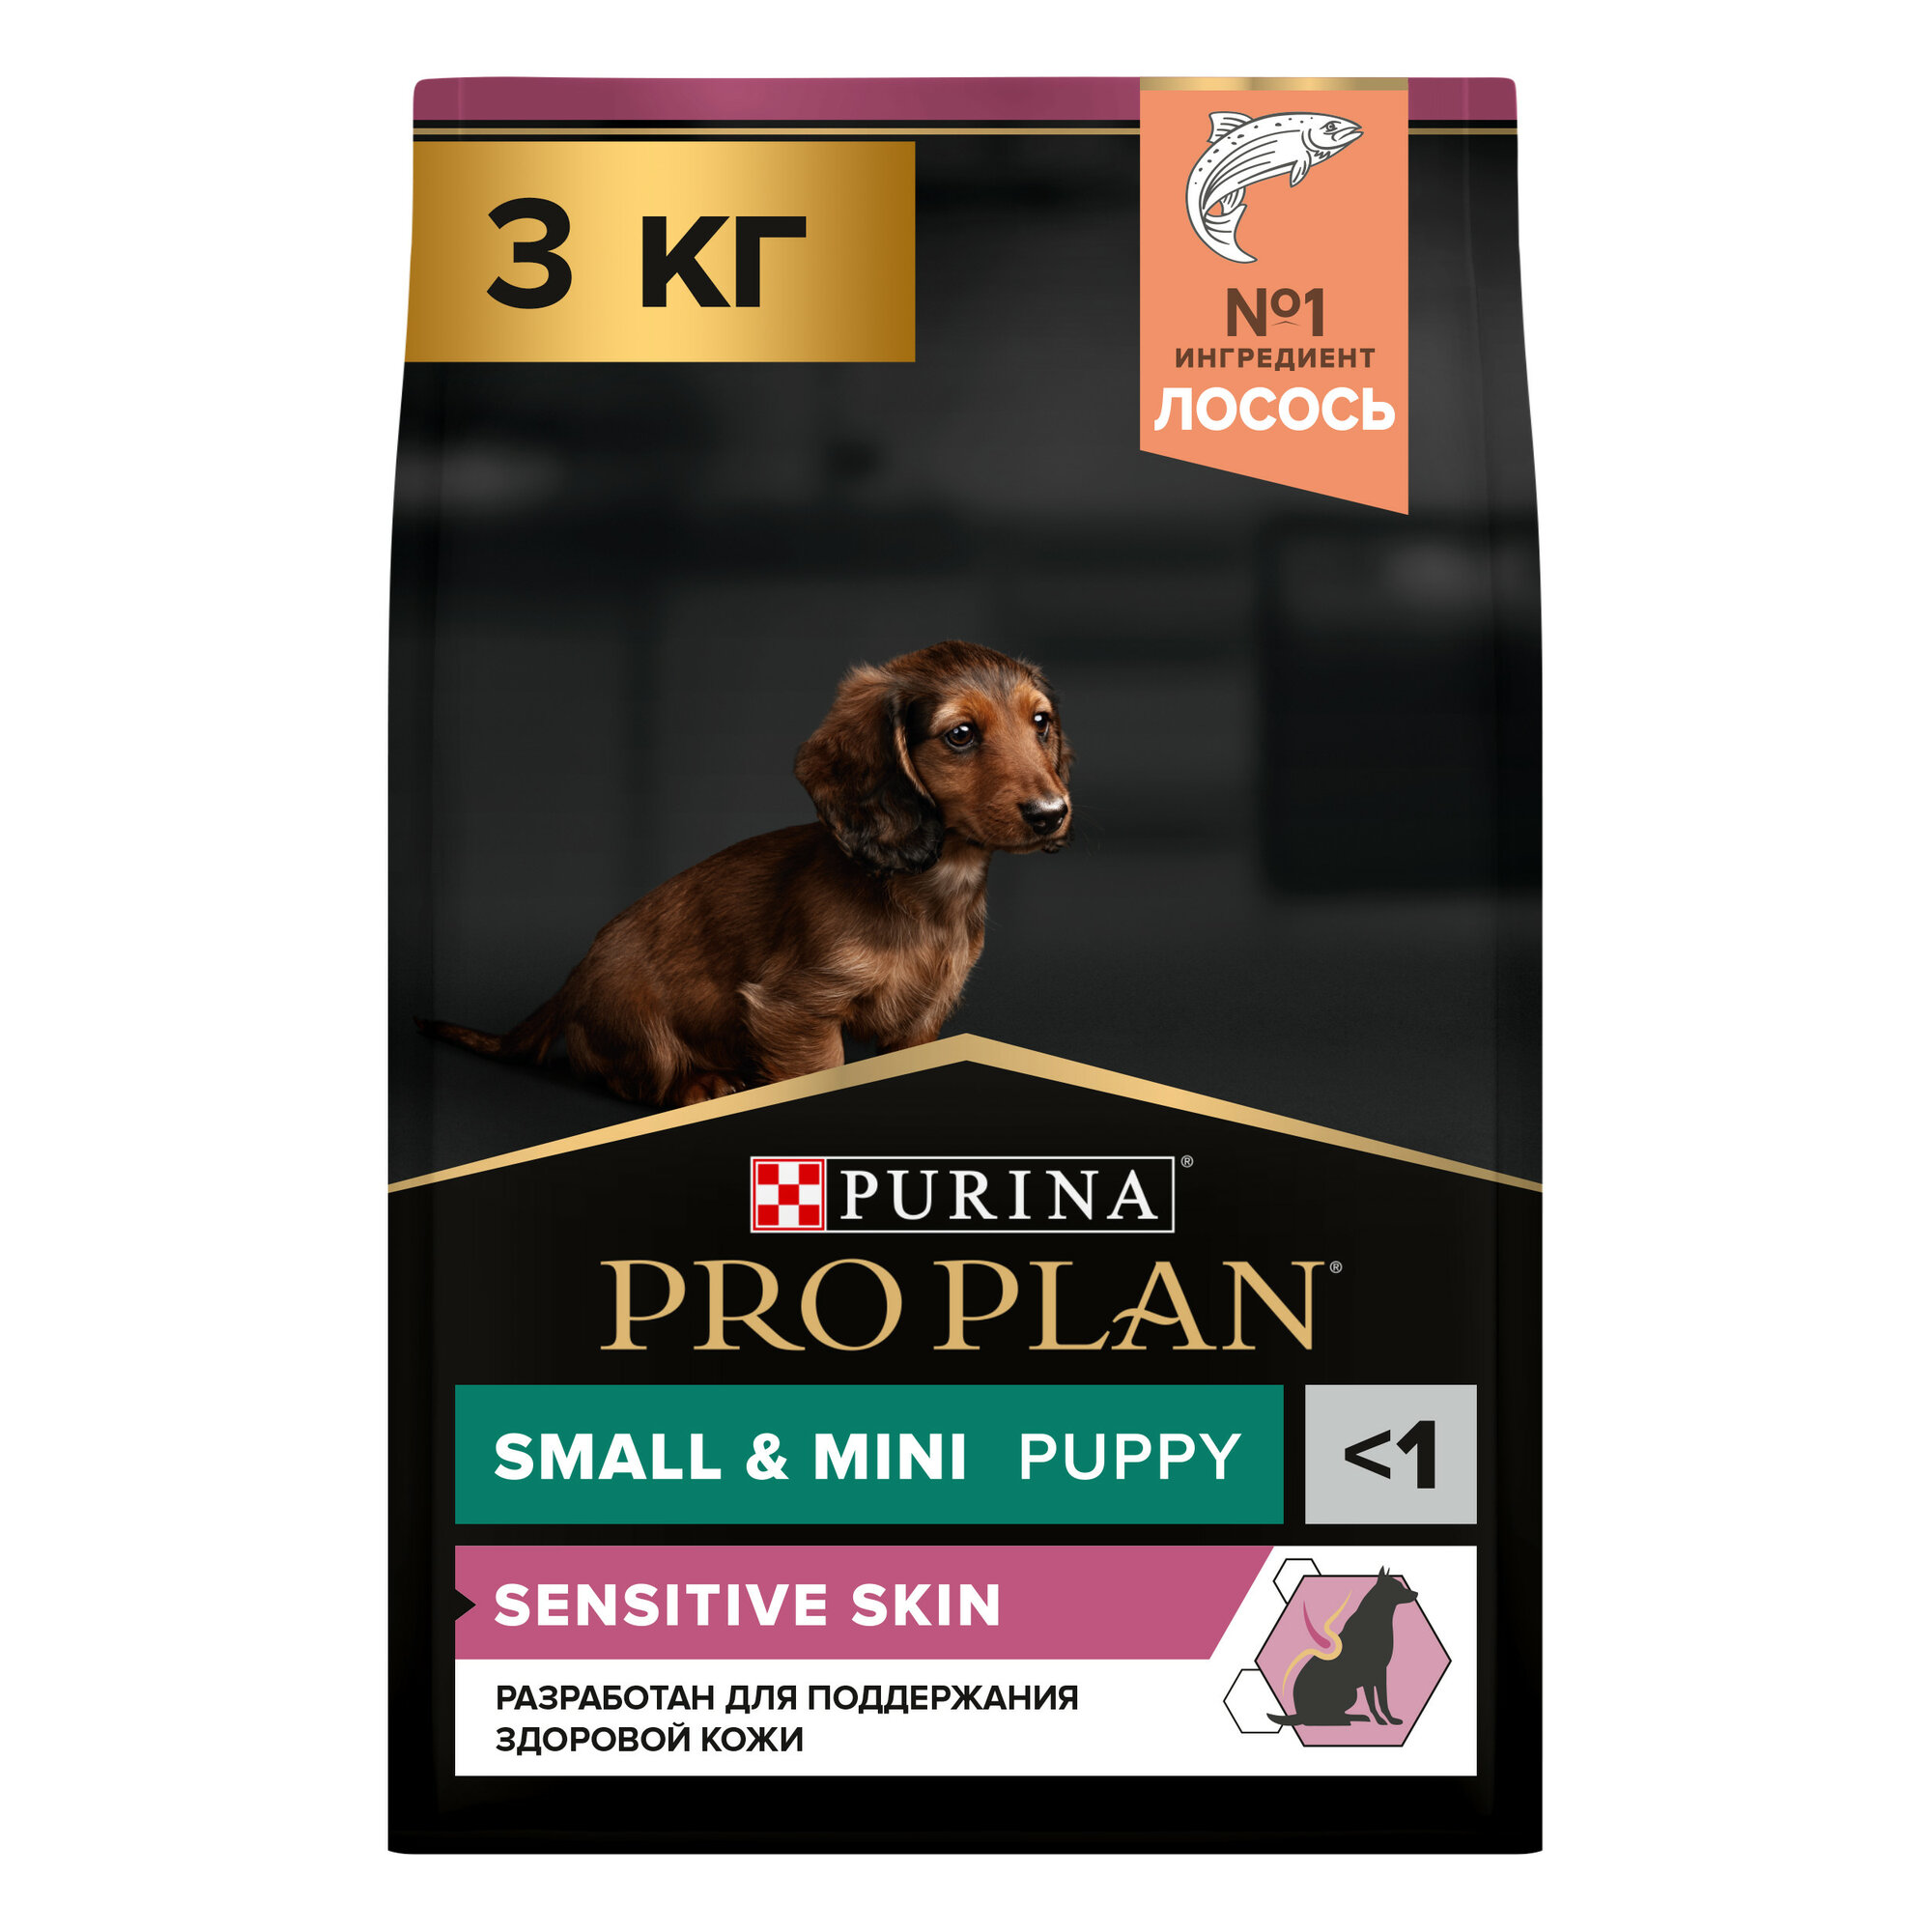 Pro Plan Small & Mini Puppy Sensitive Skin корм для щенков мелких и карликовых пород Лосось, 3 кг.